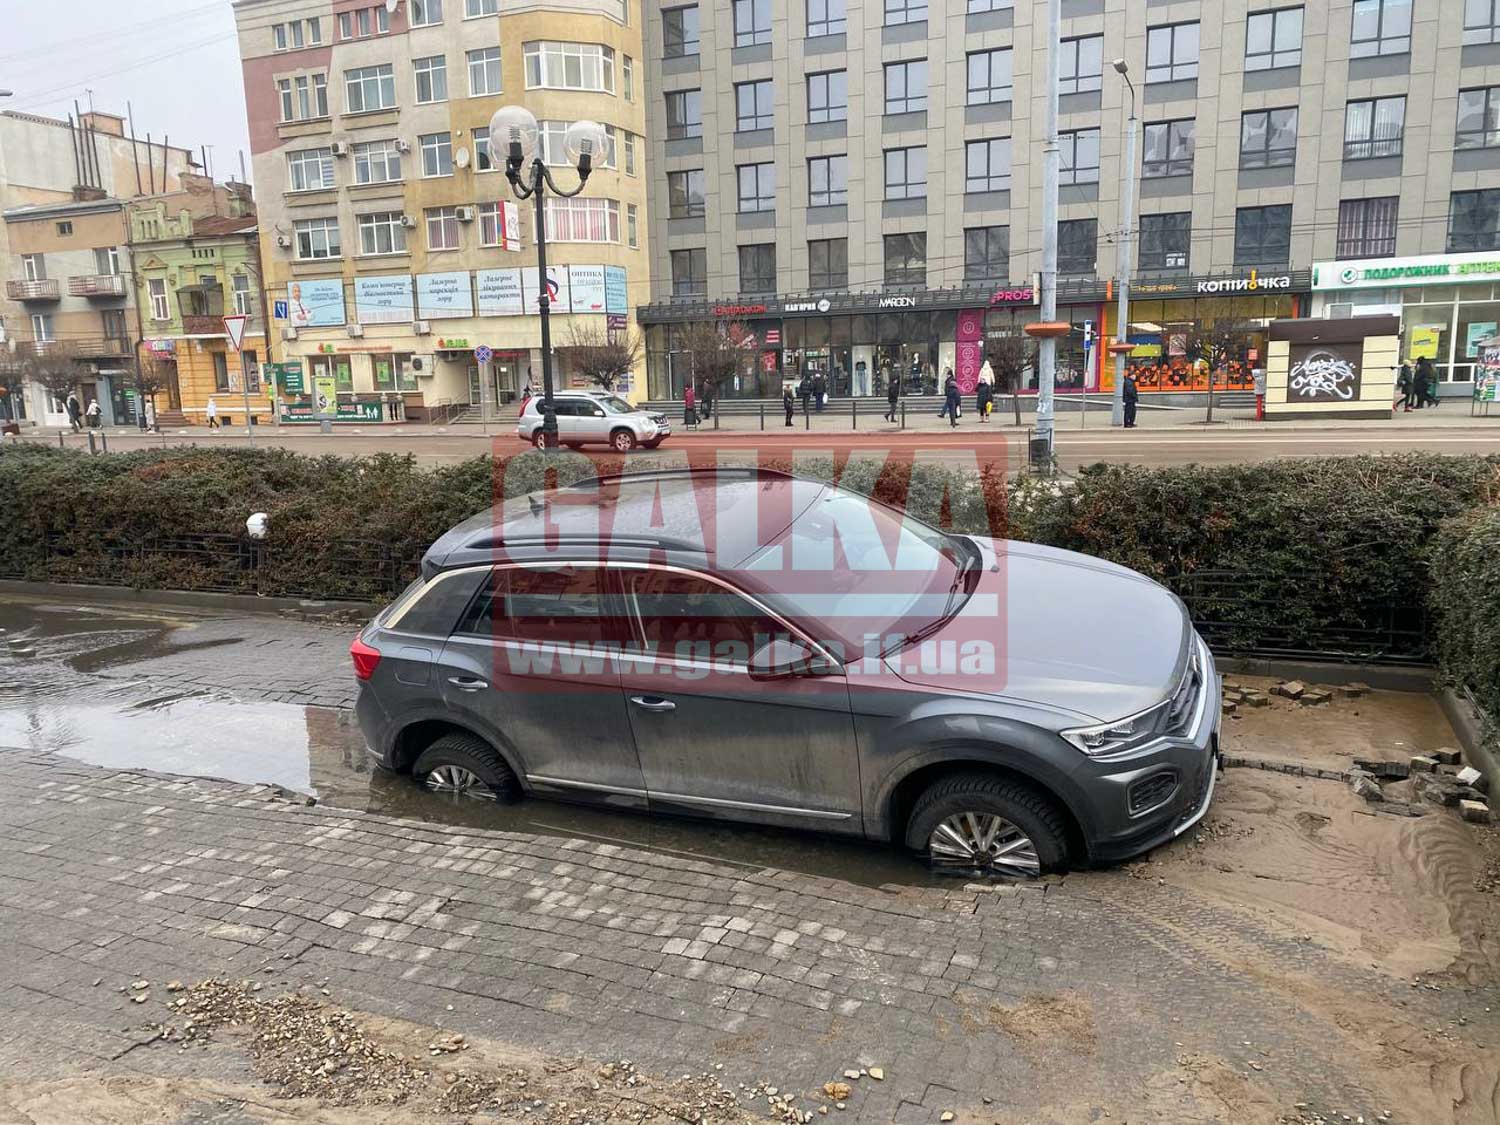 Авто провалилось під бруківку поблизу франківського готелю (ФОТО)